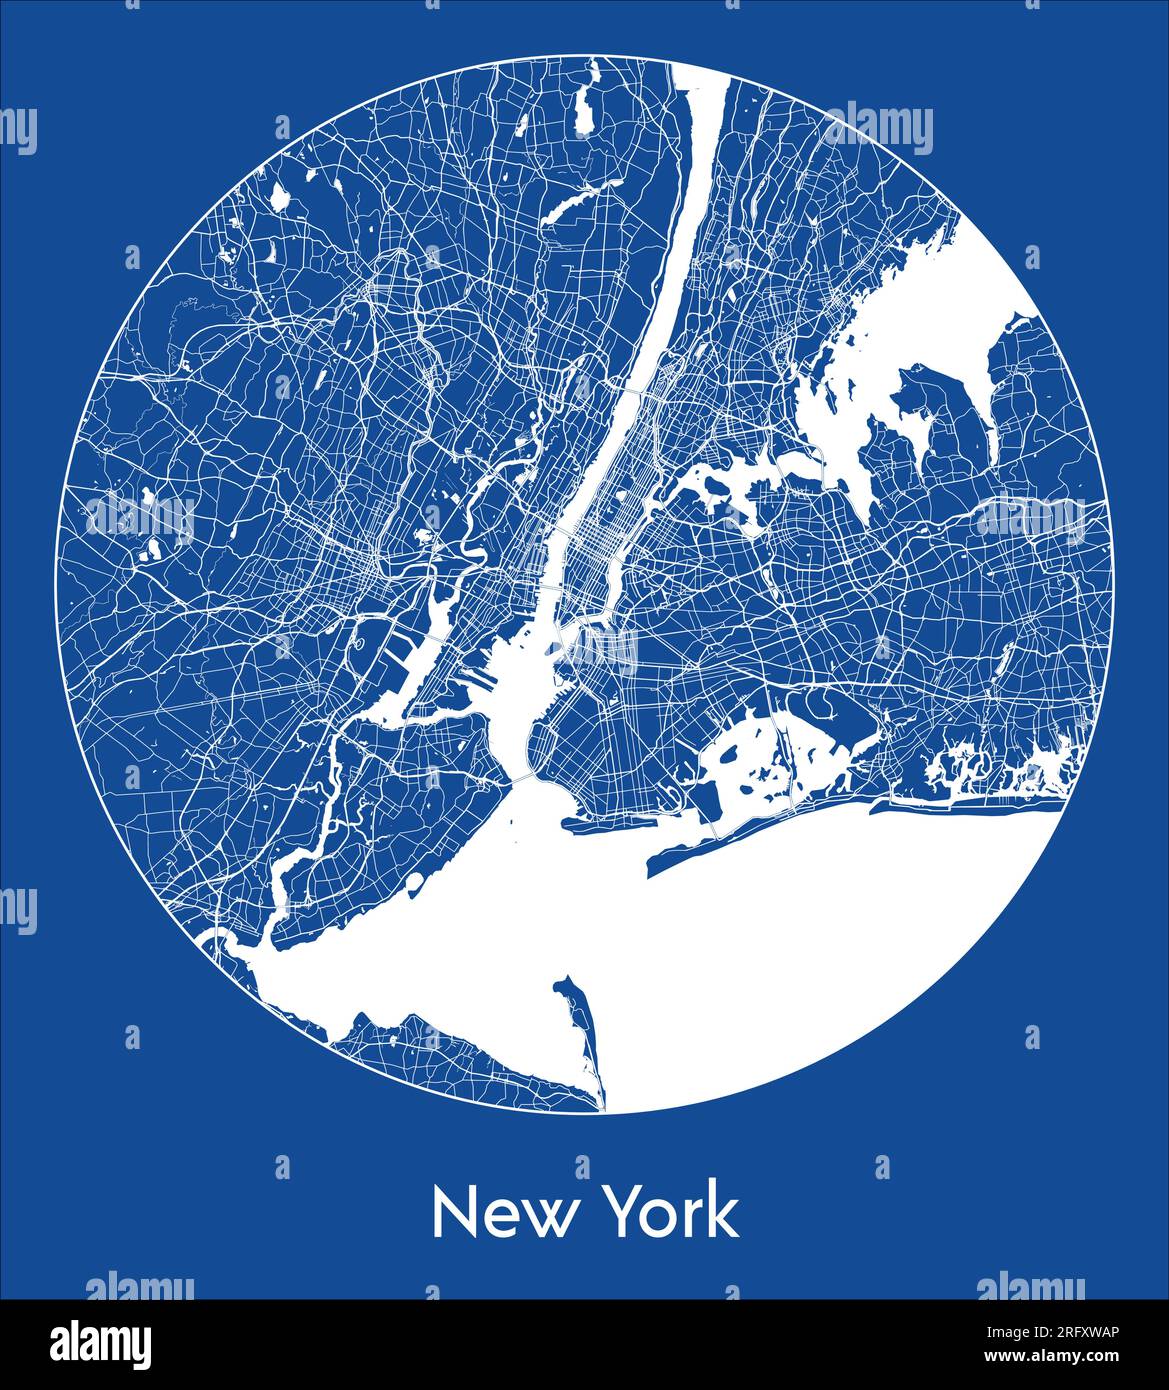 Plan de la ville New York États-Unis Amérique du Nord bleu impression ronde cercle illustration vectorielle Illustration de Vecteur